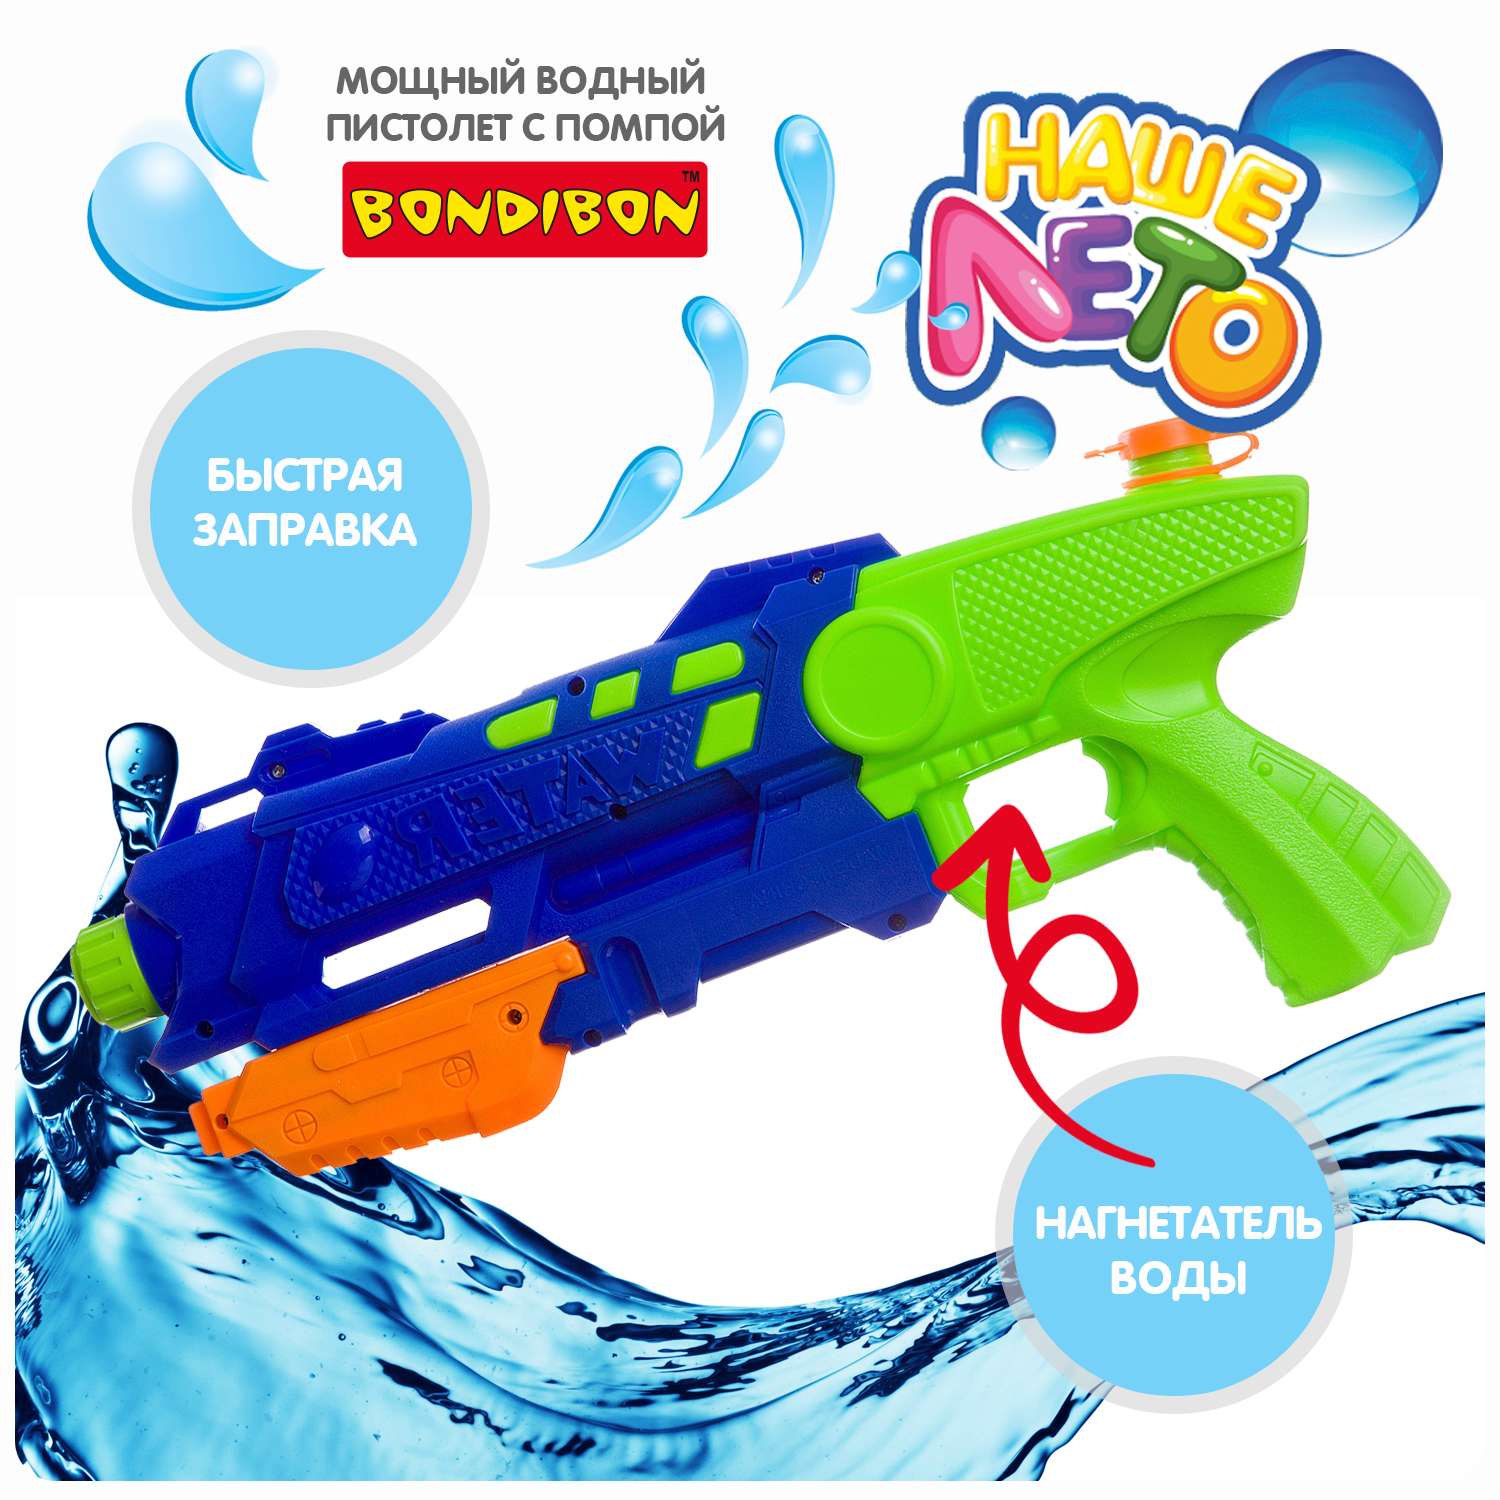 Водный пистолет BONDIBON с помпой сине-зеленого цвета серия Наше лето - фото 2